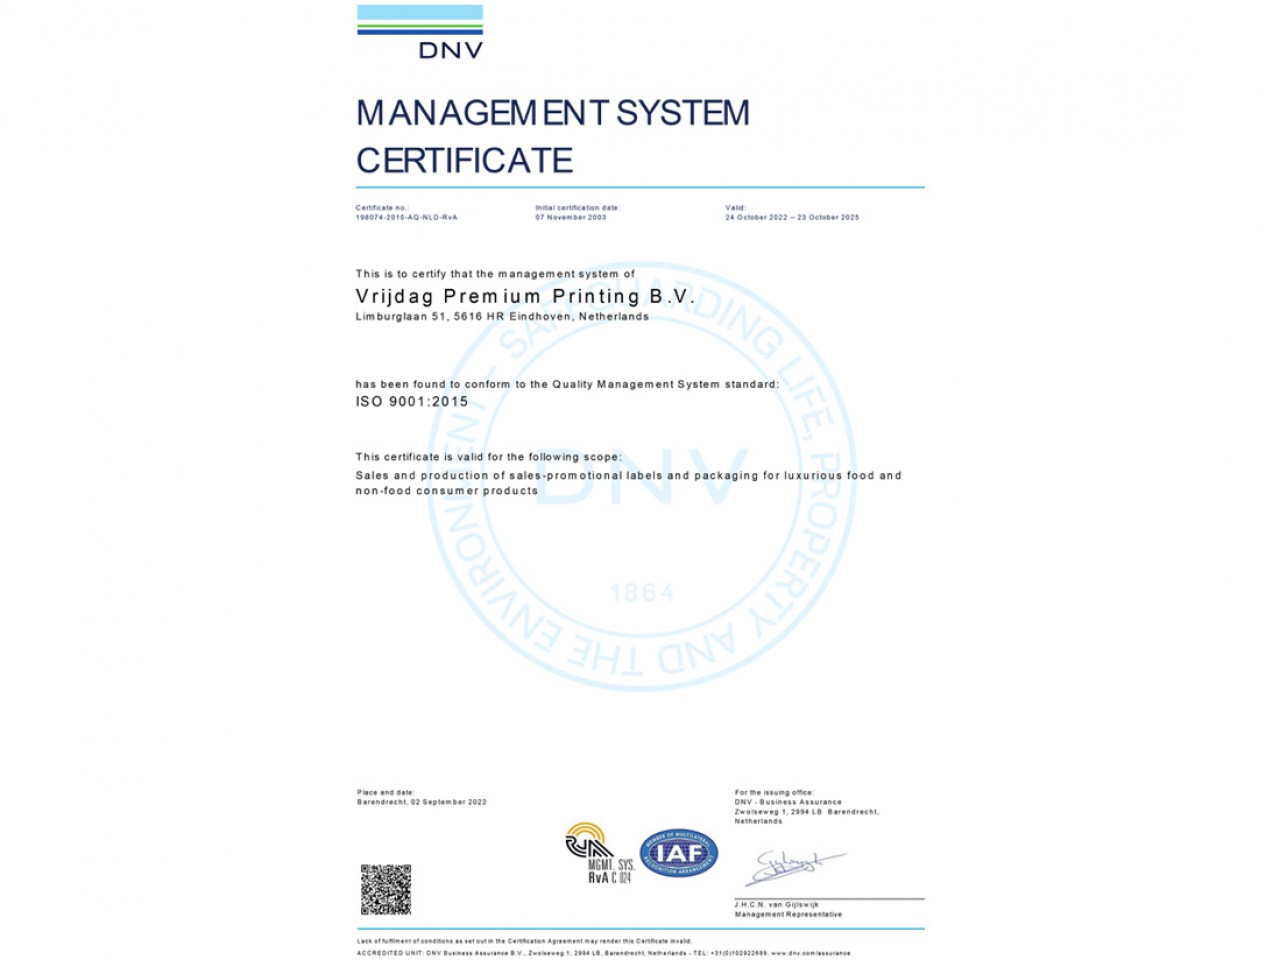 Vrijdag Premium Printing ISO 9001:2015 Quality management system certificat Logo